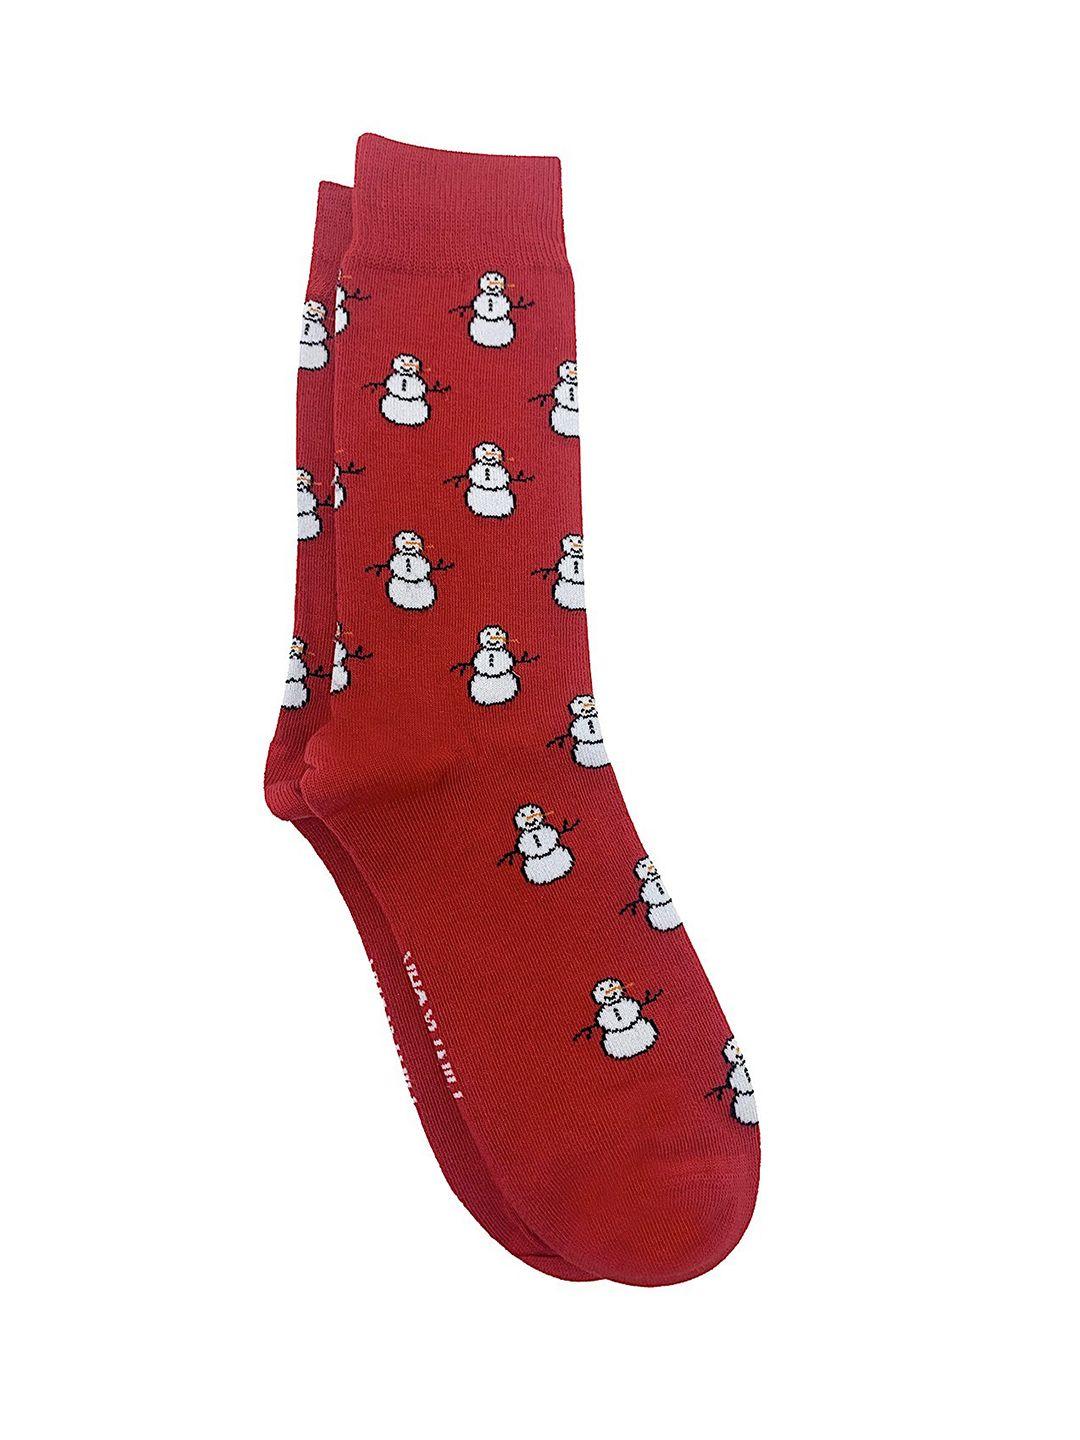 mint-&-oak-men-red-&-white-patterned-calf-length-socks